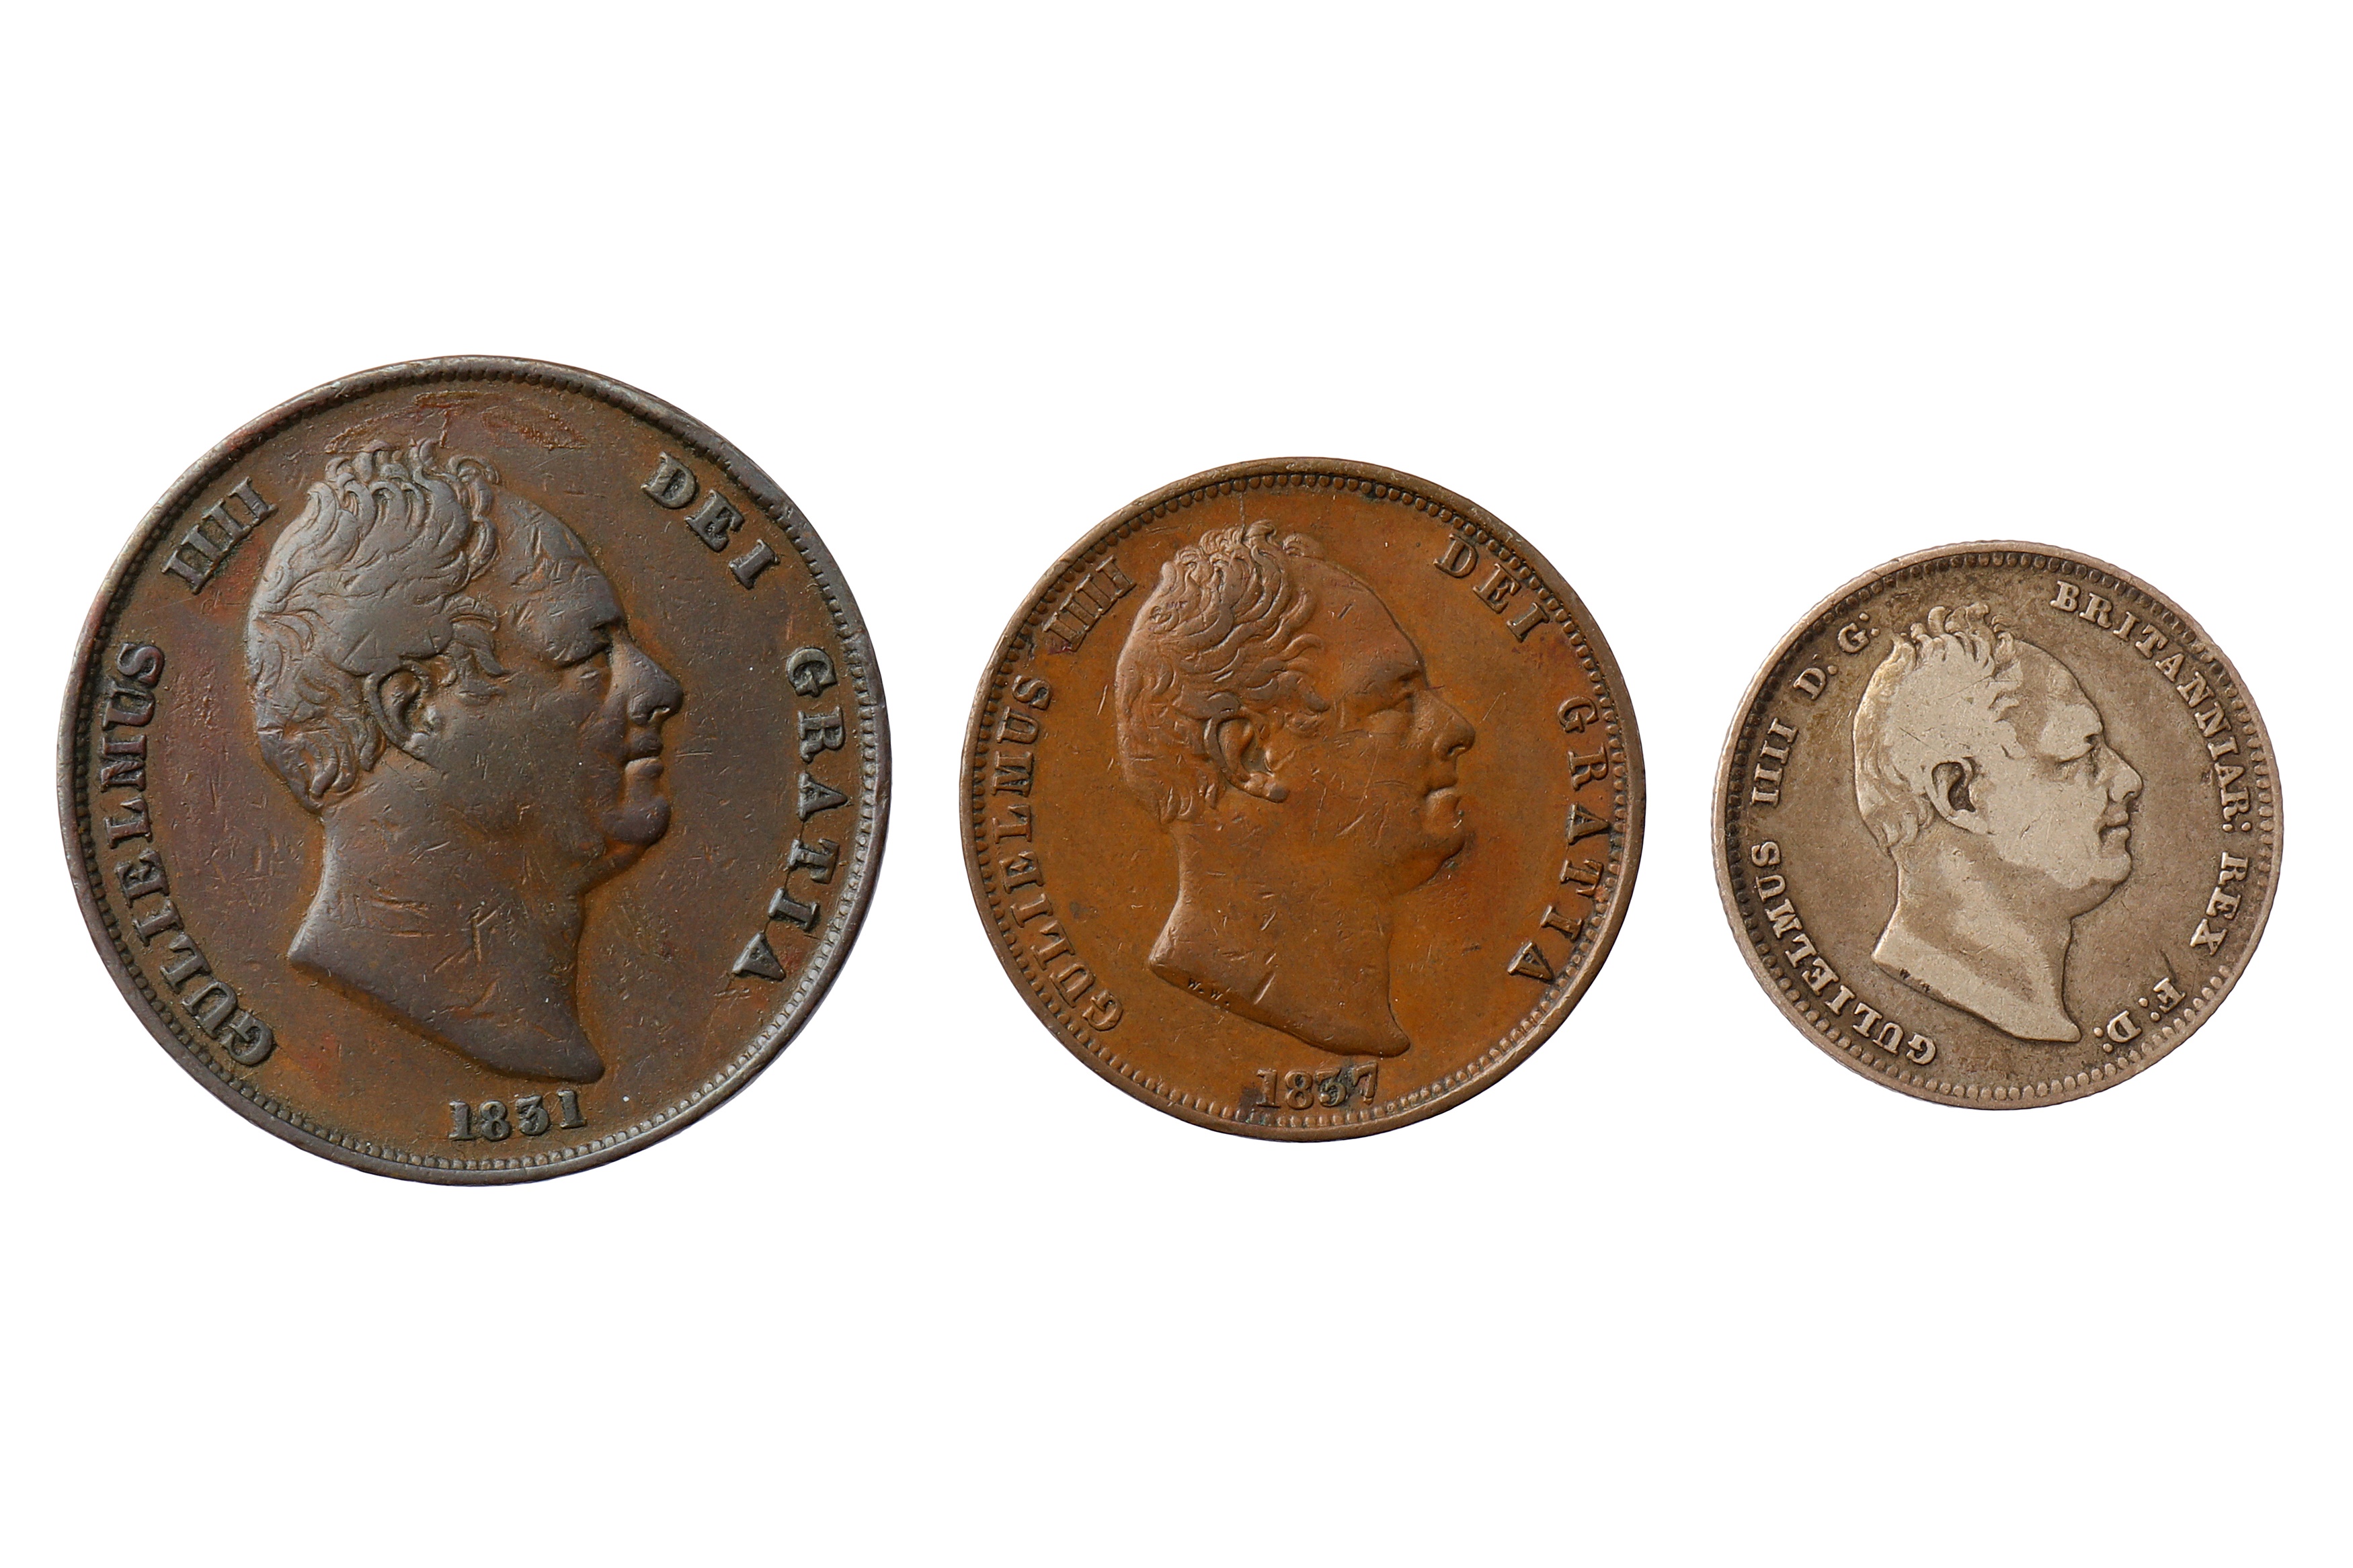 WILLIAM IV (1830 - 1837), 3X COINS 